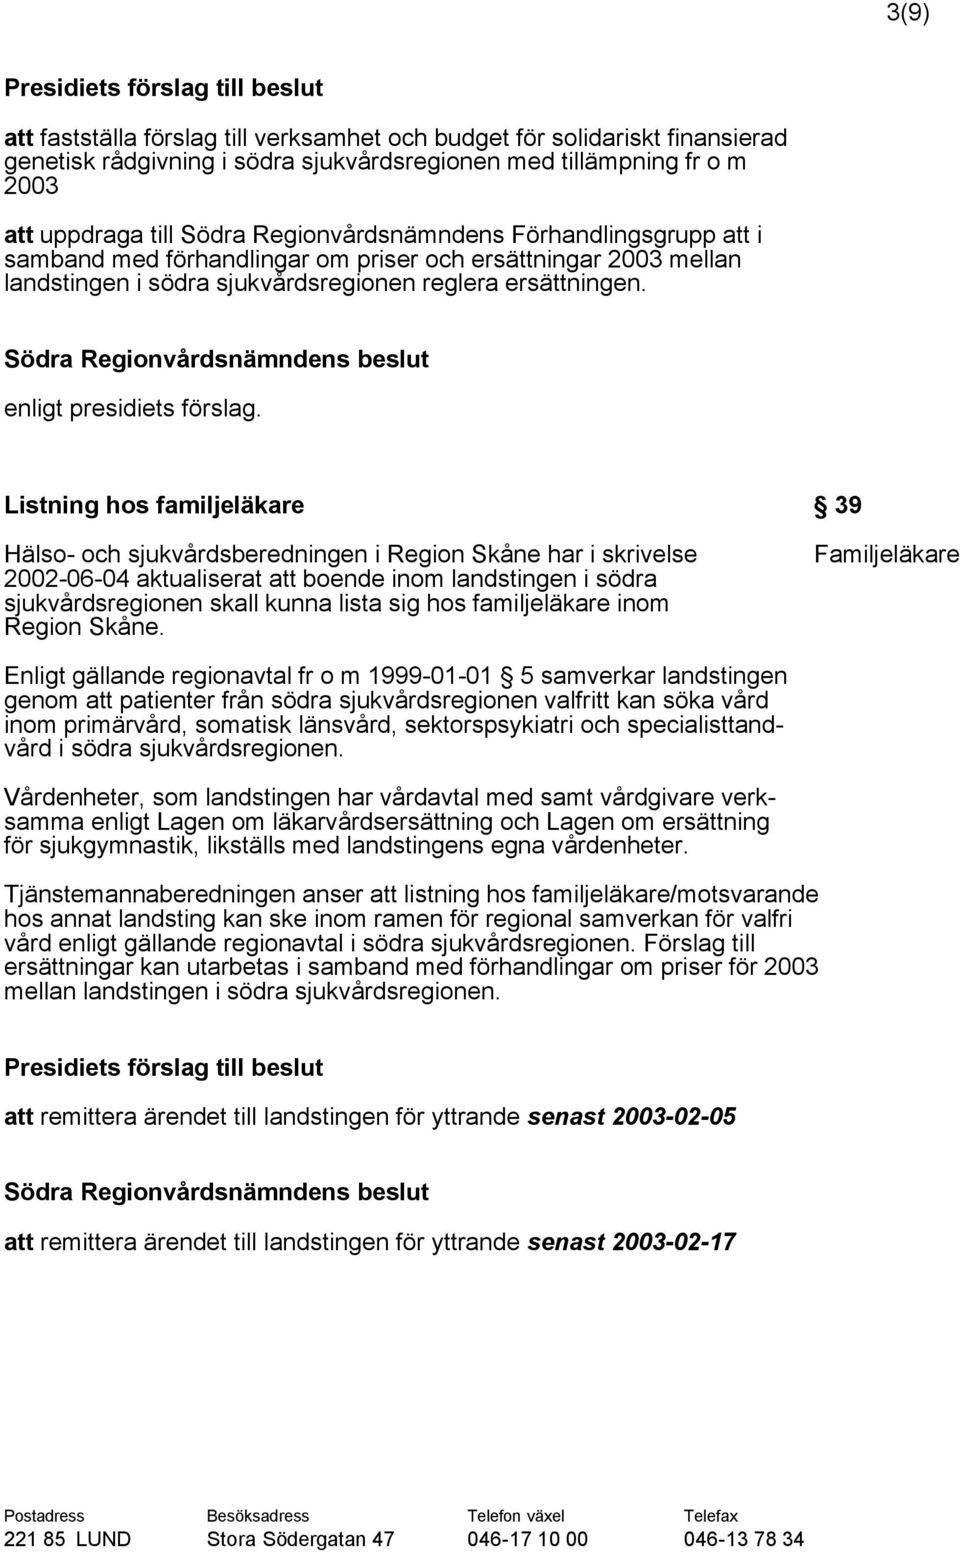 Listning hos familjeläkare 39 Hälso- och sjukvårdsberedningen i Region Skåne har i skrivelse 2002-06-04 aktualiserat att boende inom landstingen i södra sjukvårdsregionen skall kunna lista sig hos